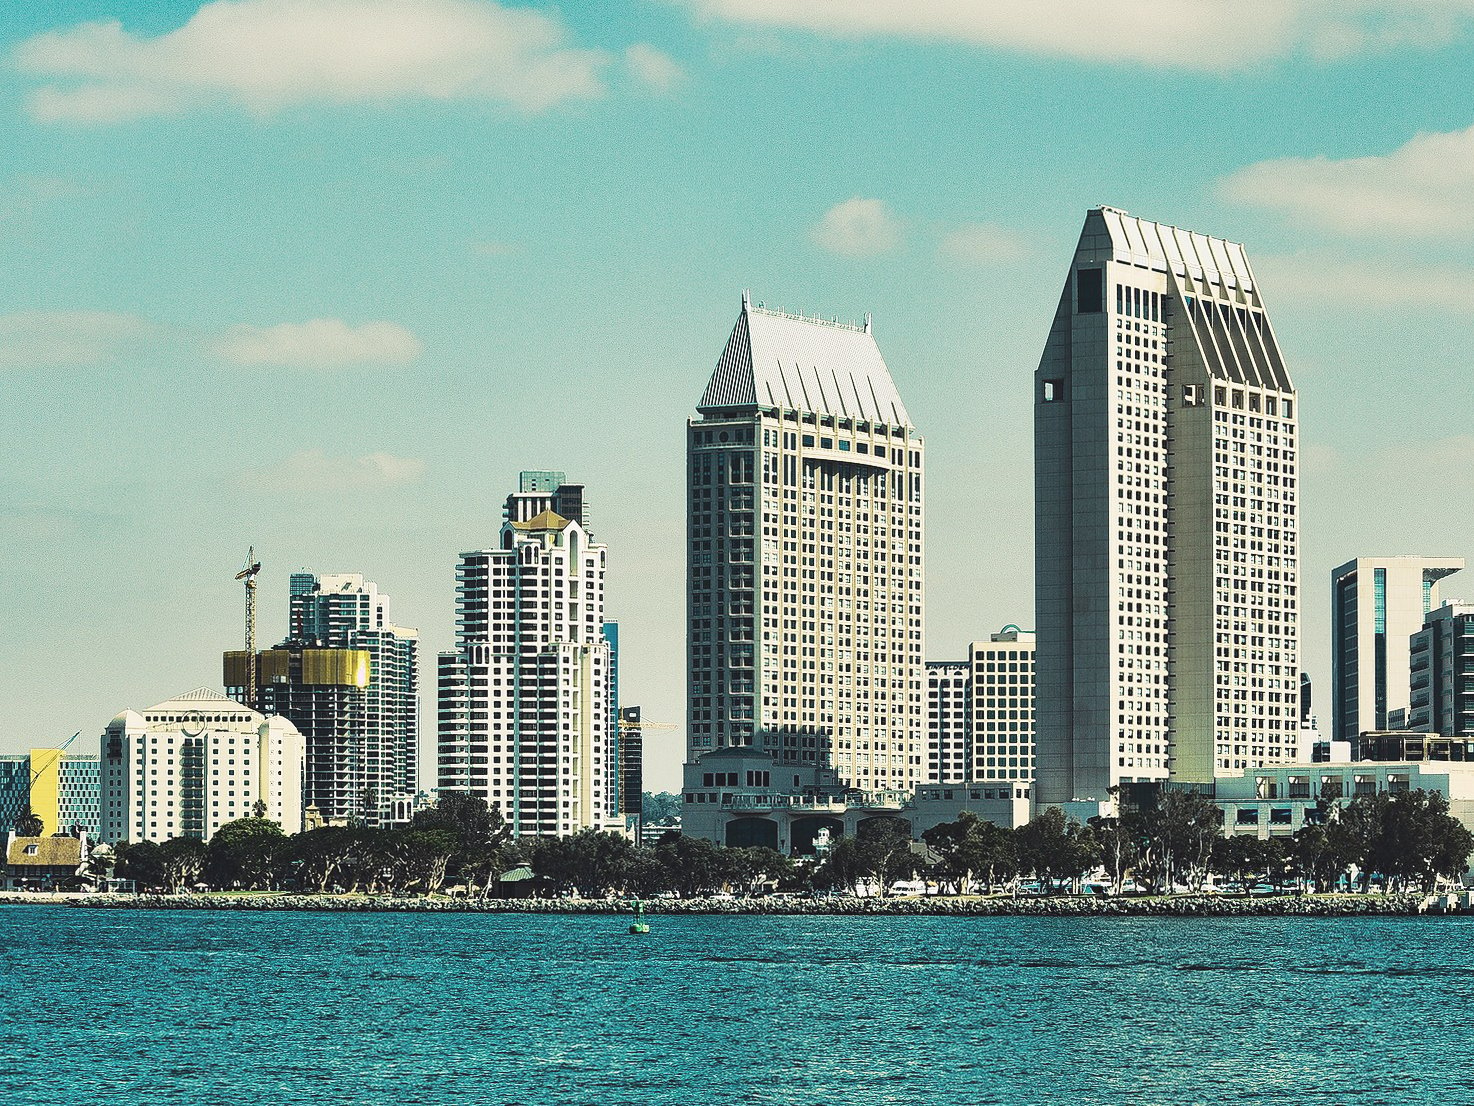 San Diego skyline during a sunny day.